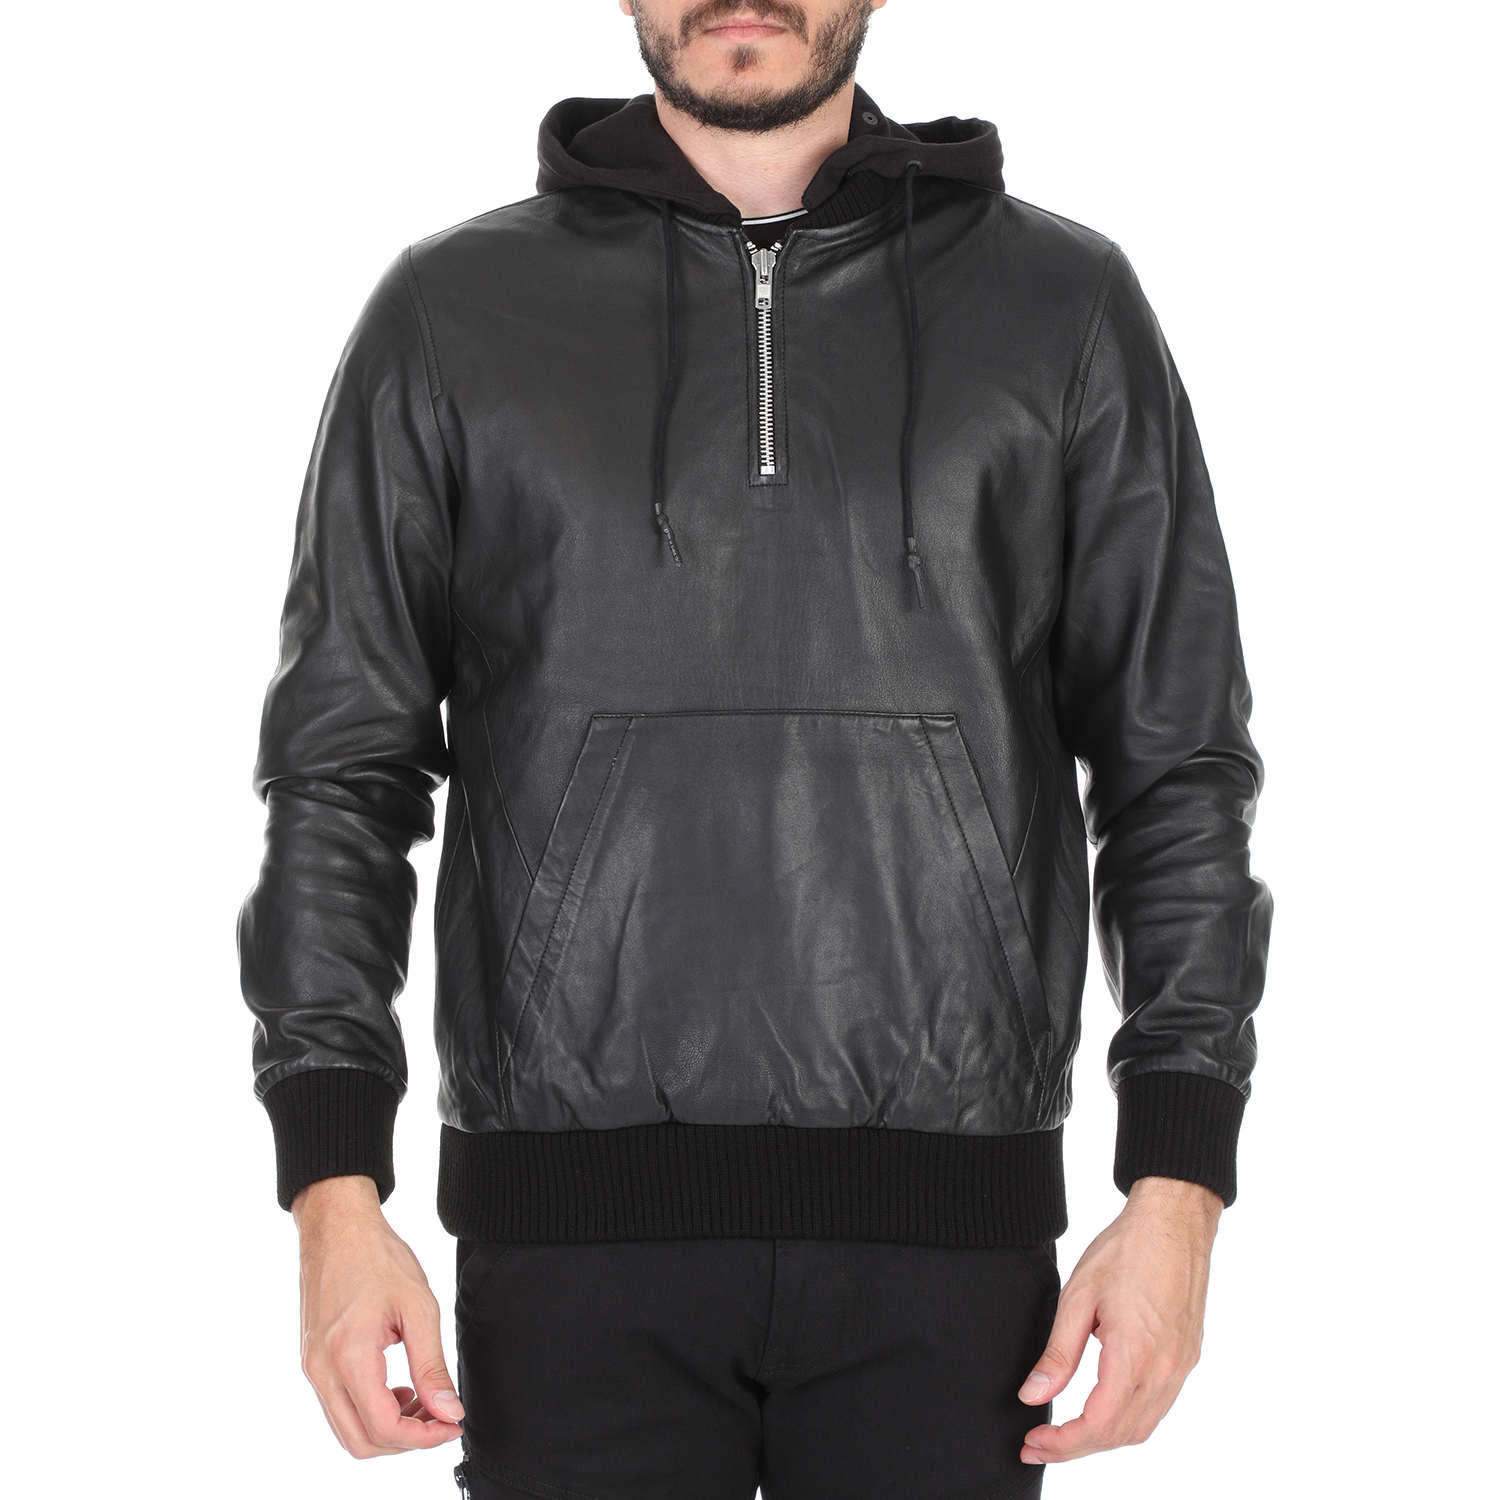 Ανδρικά/Ρούχα/Πανωφόρια/Τζάκετς RELIGION - Ανδρικό jacket με κουκούλα RELIGION BRONX HOODY μαύρο